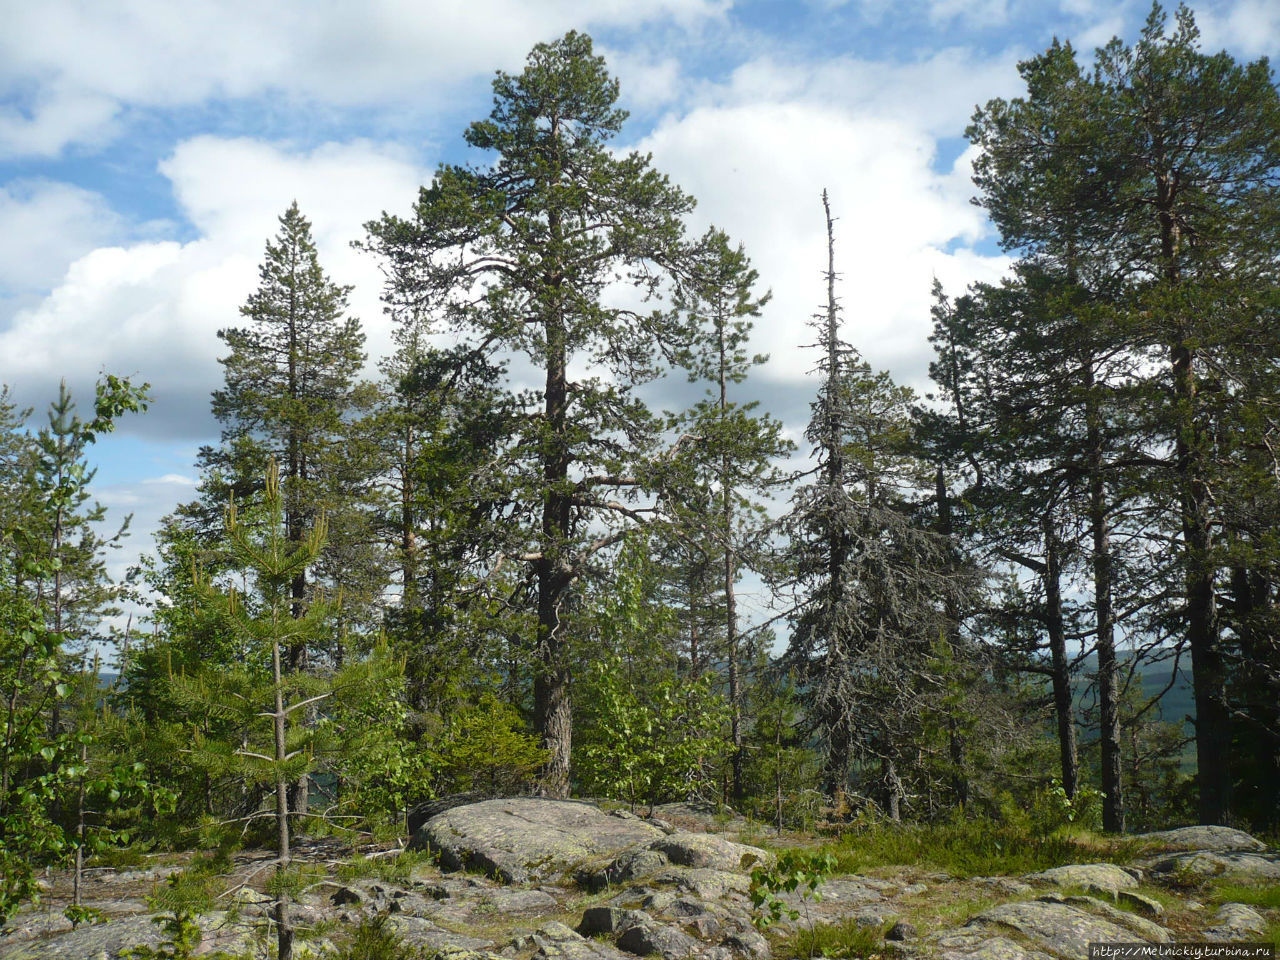 Смотровая вышка на горе Авасакса Юлиторнио, Финляндия